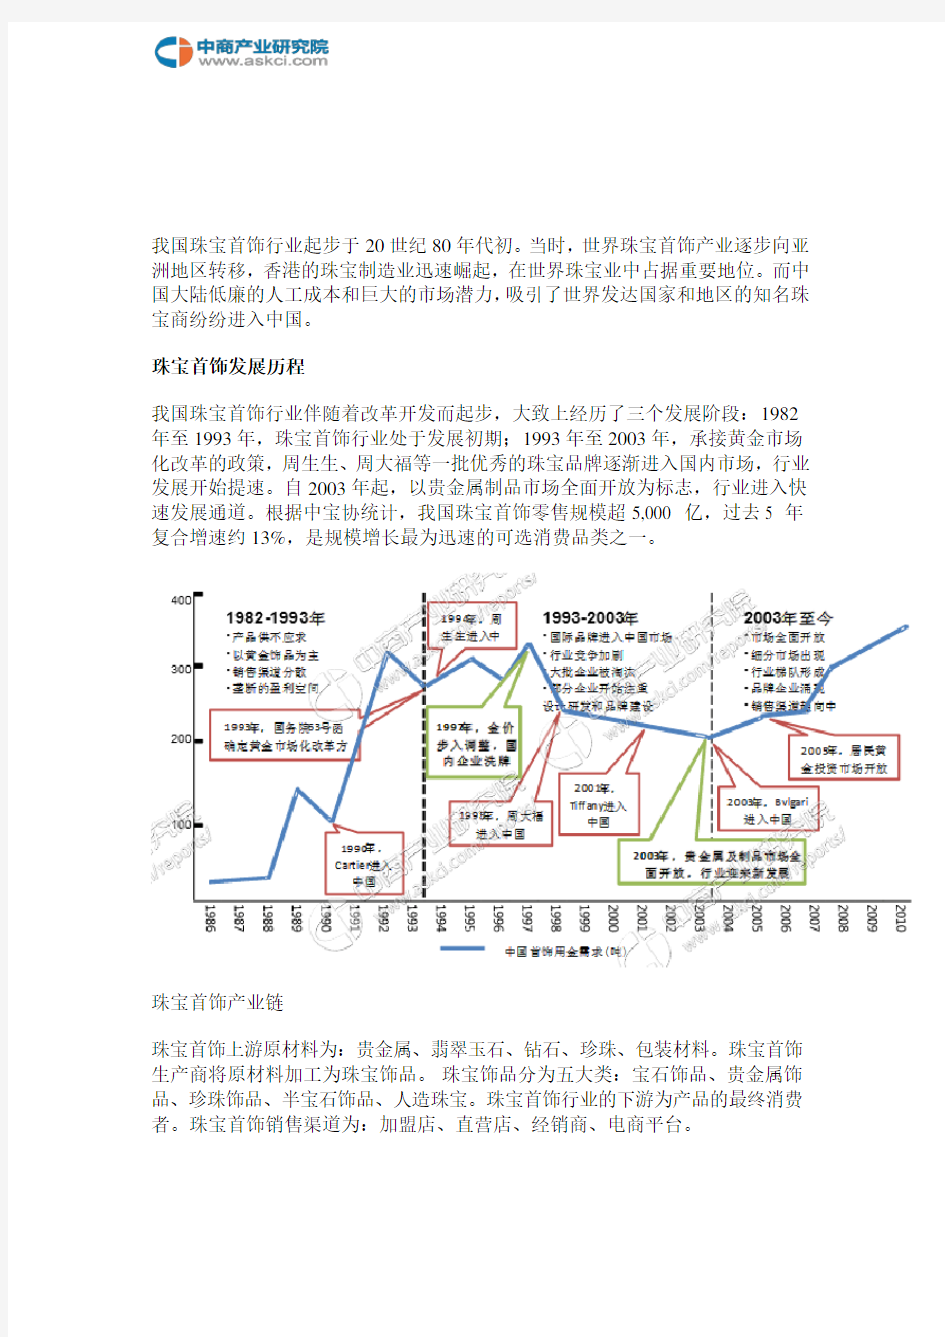 中国珠宝首饰行业产业链及主要企业分析